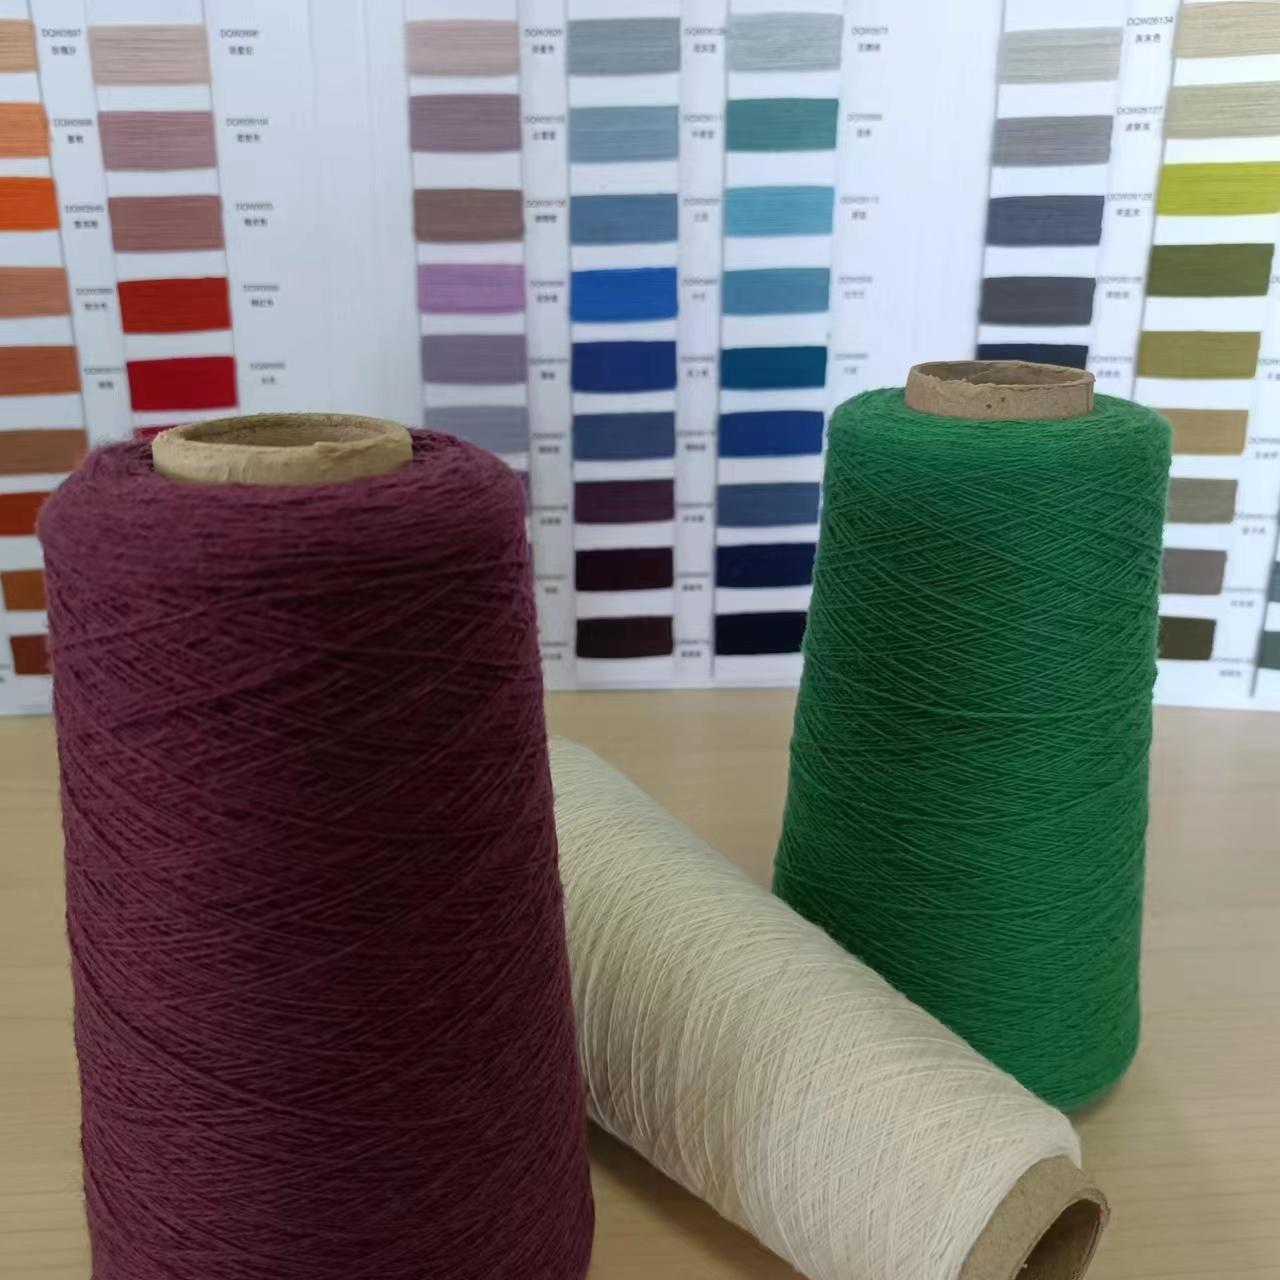 Woolen cashmere yarn merino